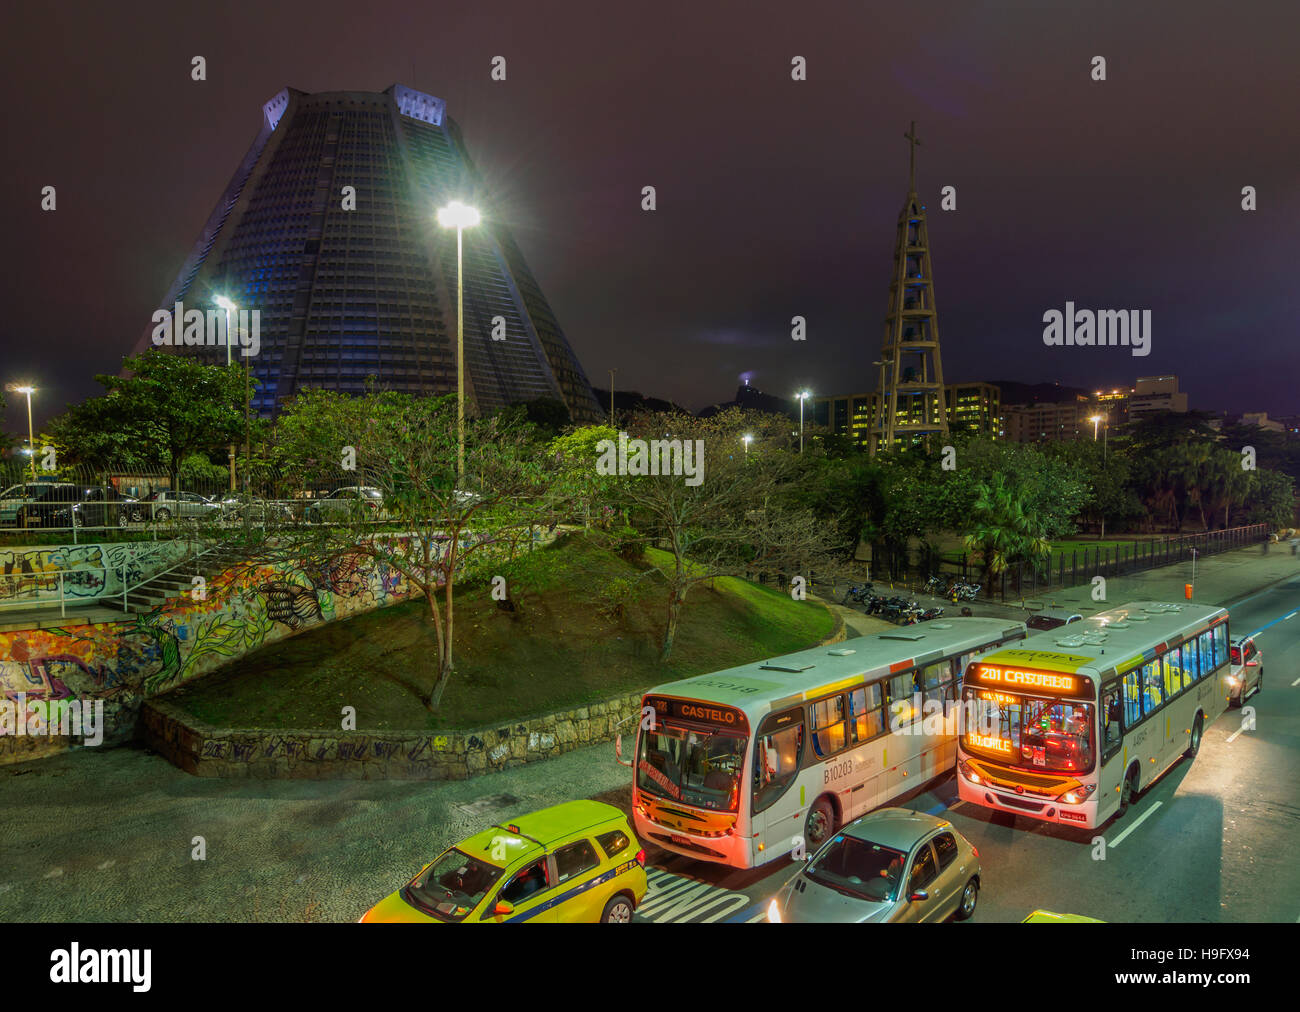 Il Brasile, la città di Rio de Janeiro, Centro citta', vista notturna della Avenida Republica do Chile e la Cattedrale Metropolitana. Foto Stock